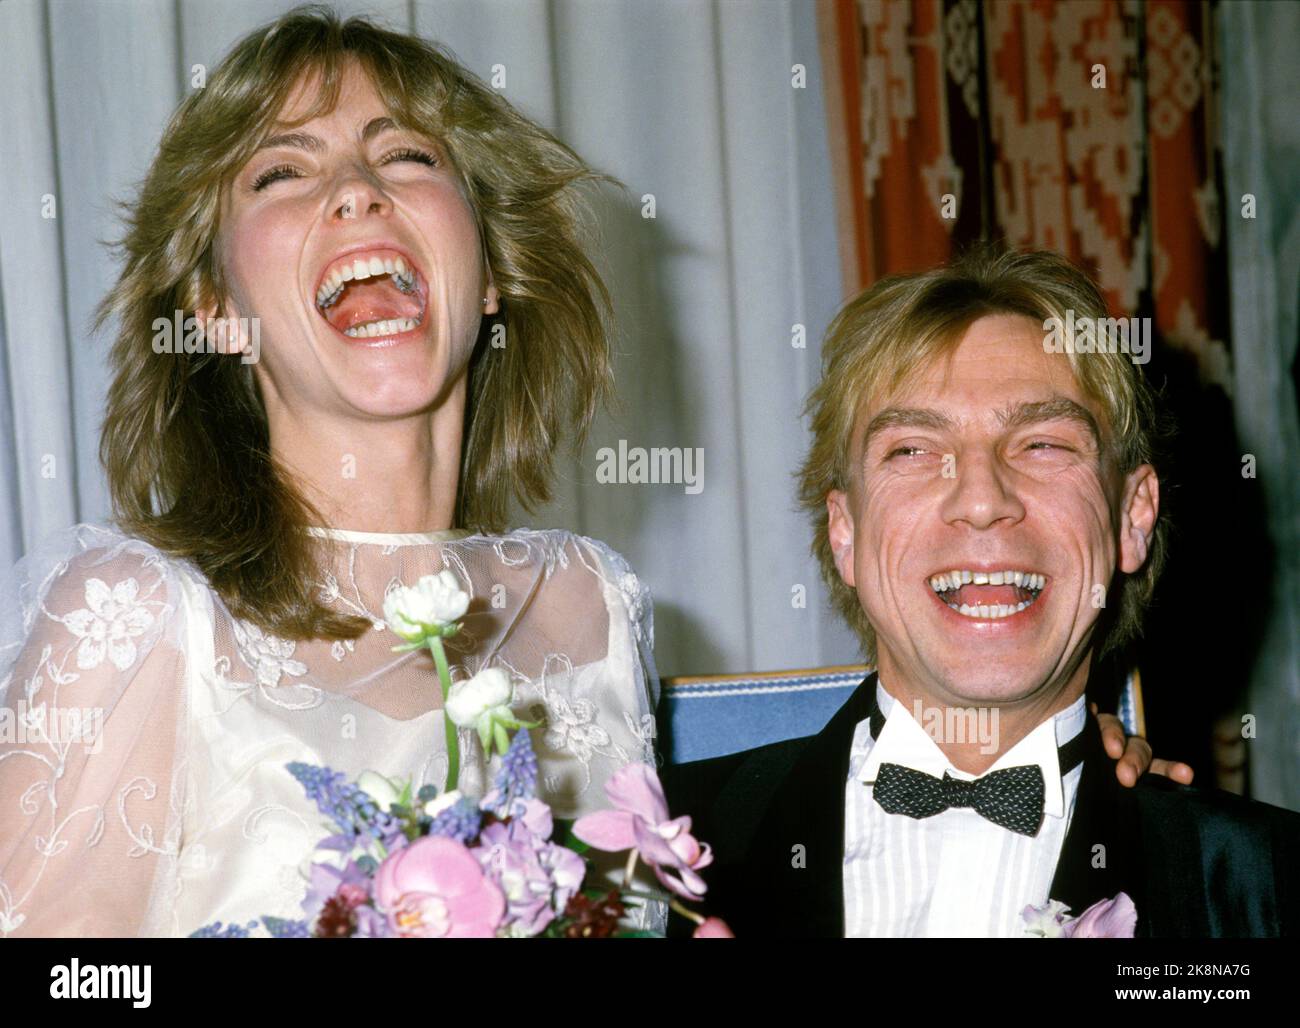 Oslo 1984-02: Matrimonio celebrità. Anita Skorgan e Jahn Teigen sono stati dedicati al municipio di Oslo il 17 febbraio 1984. Qui la coppia insieme. Foto: Bjørn Sigurdsøn / NTB / NTB Foto Stock